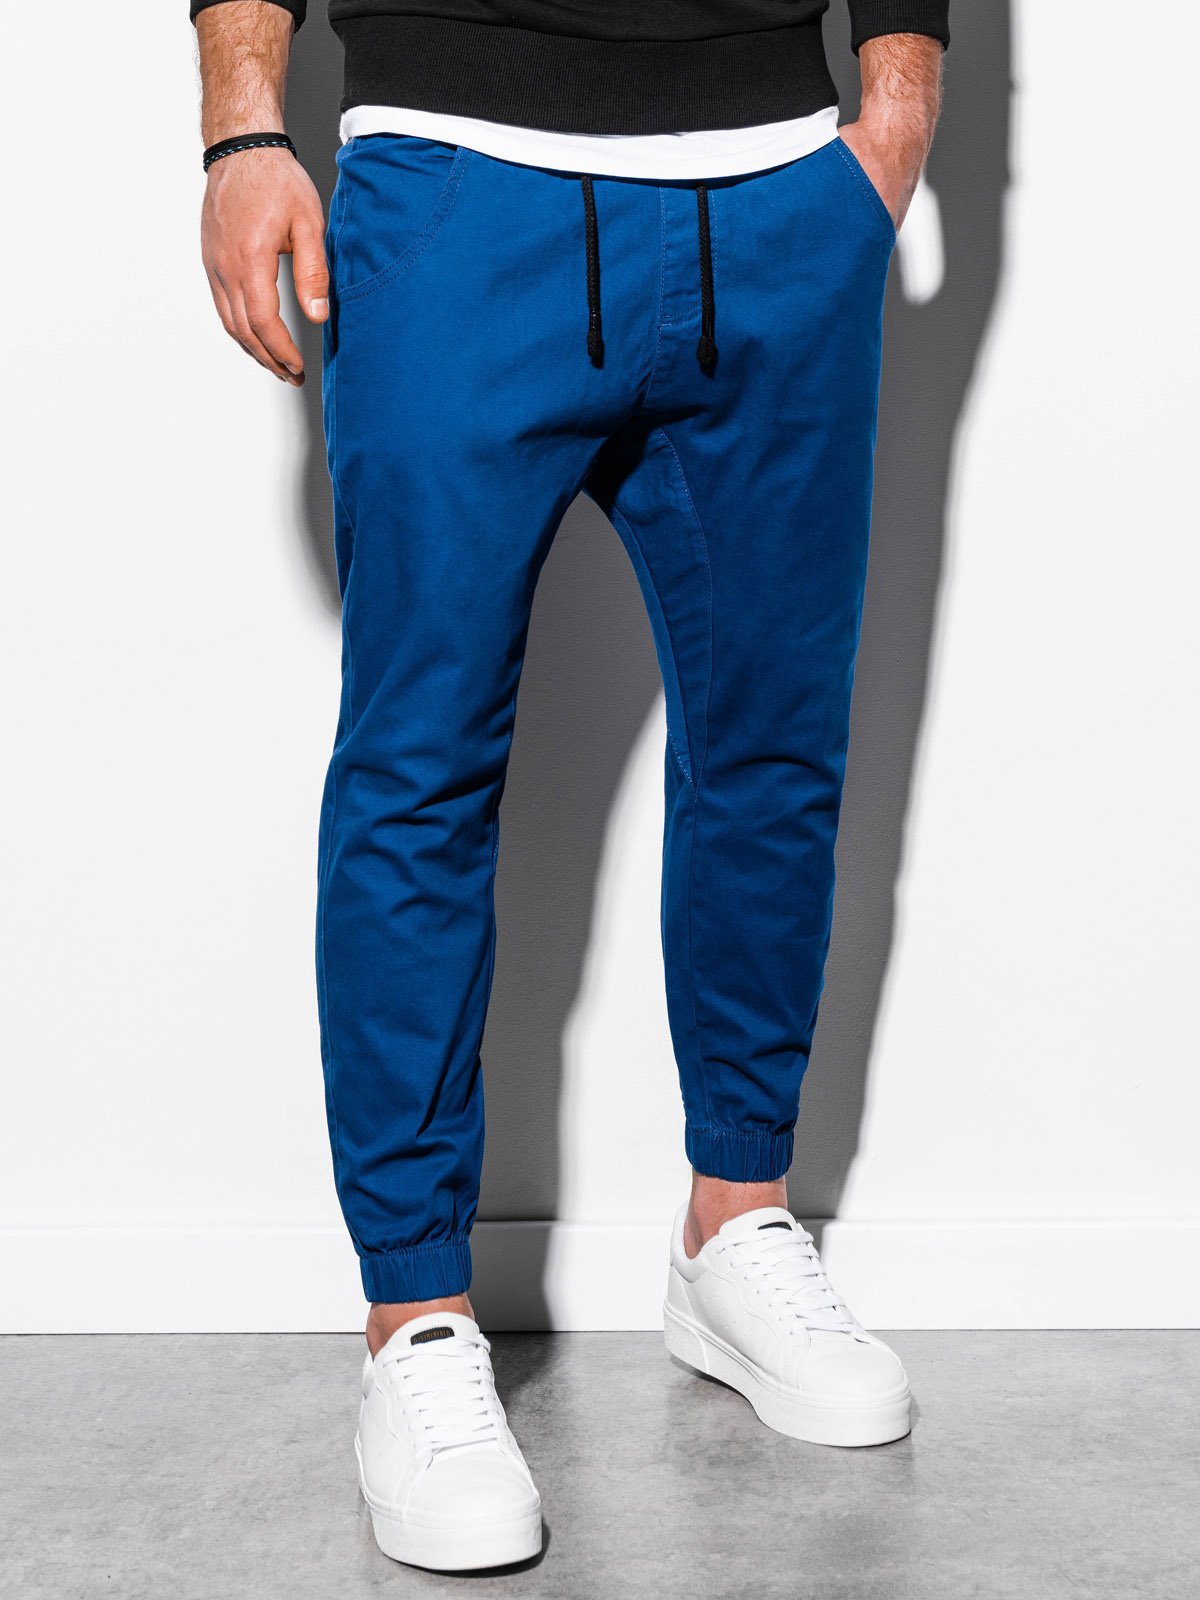 Men's pants joggers - camel P885  MODONE wholesale - Clothing For Men